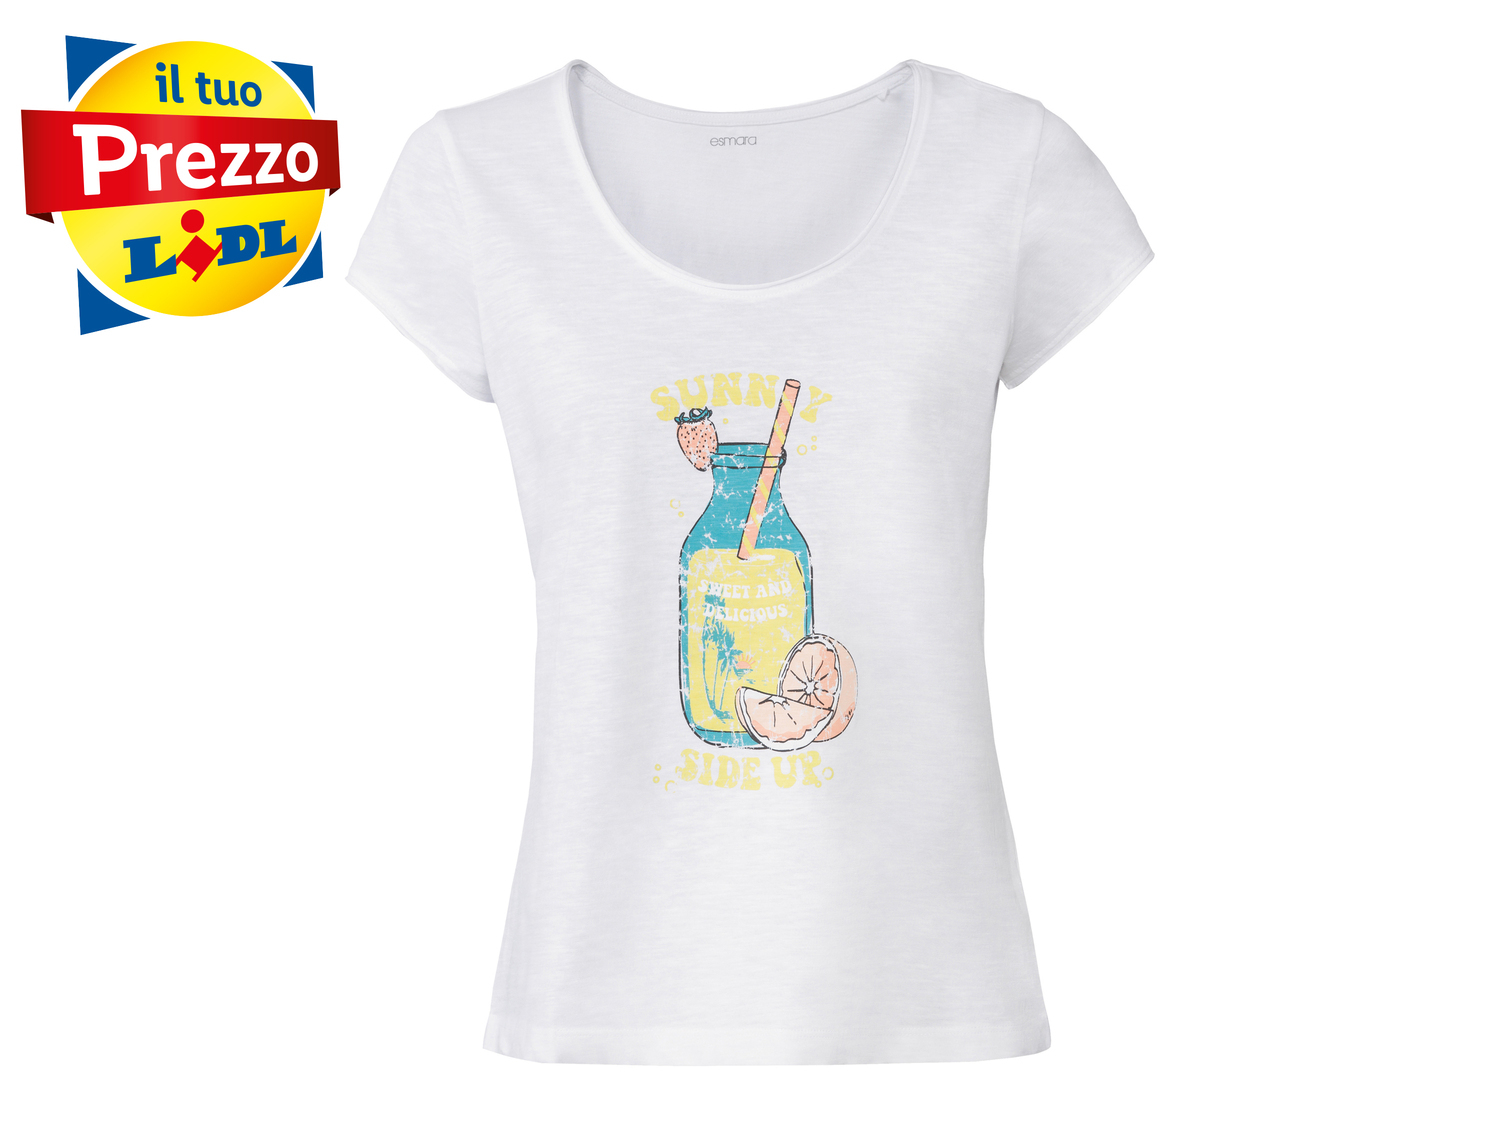 T-shirt da donna Esmara, prezzo 3.99 &#8364; 
Misure: S-L 
- Puro cotone
Prodotto ...